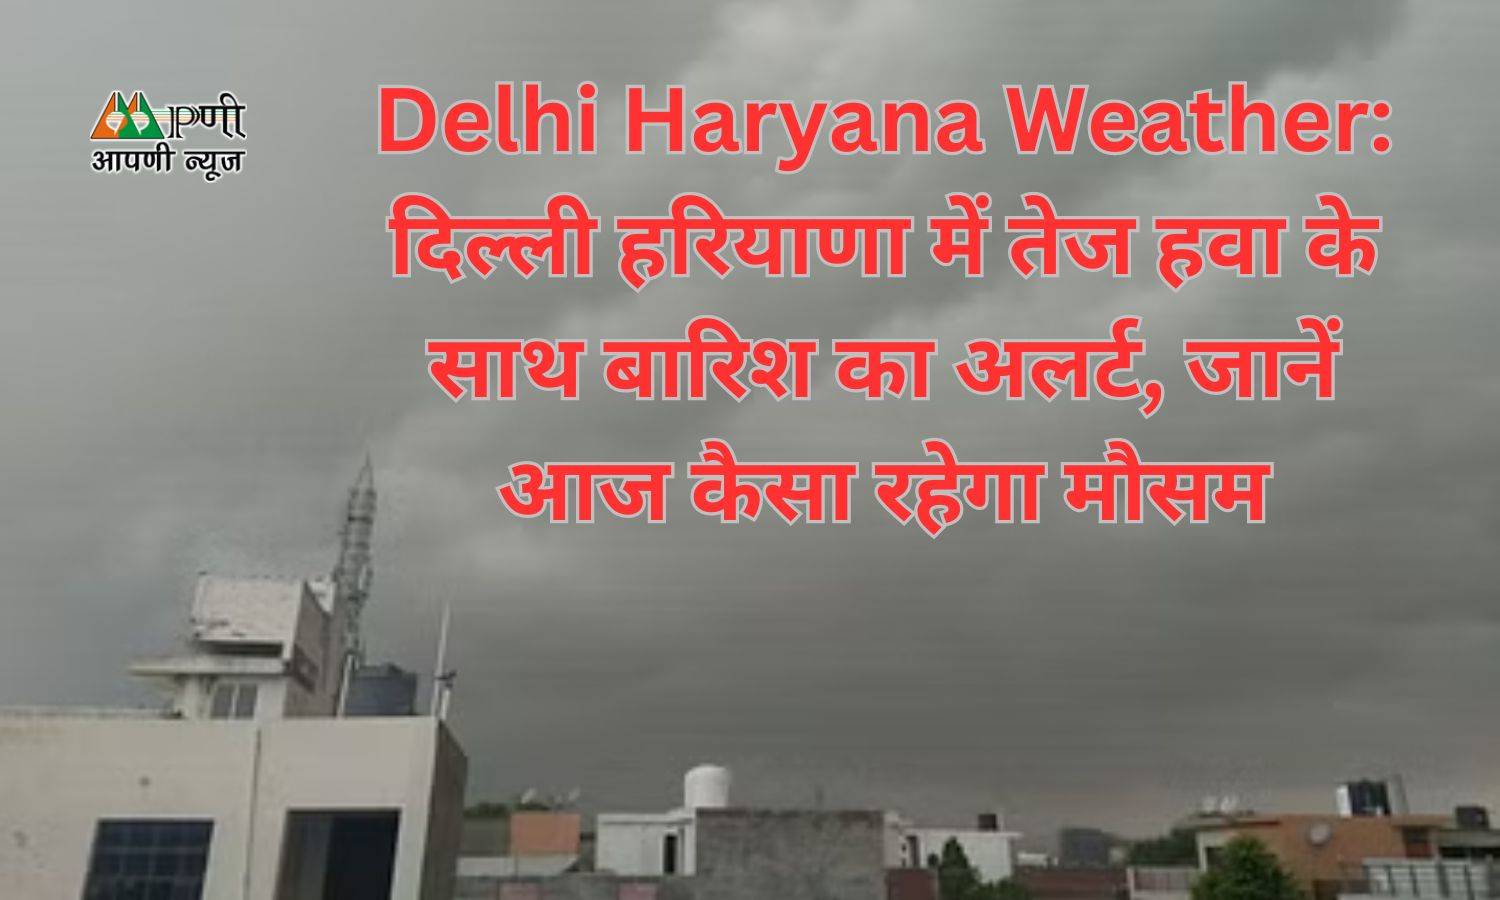 Delhi Haryana Weather: दिल्ली हरियाणा में तेज हवा के साथ बारिश का अलर्ट, जानें आज कैसा रहेगा मौसम